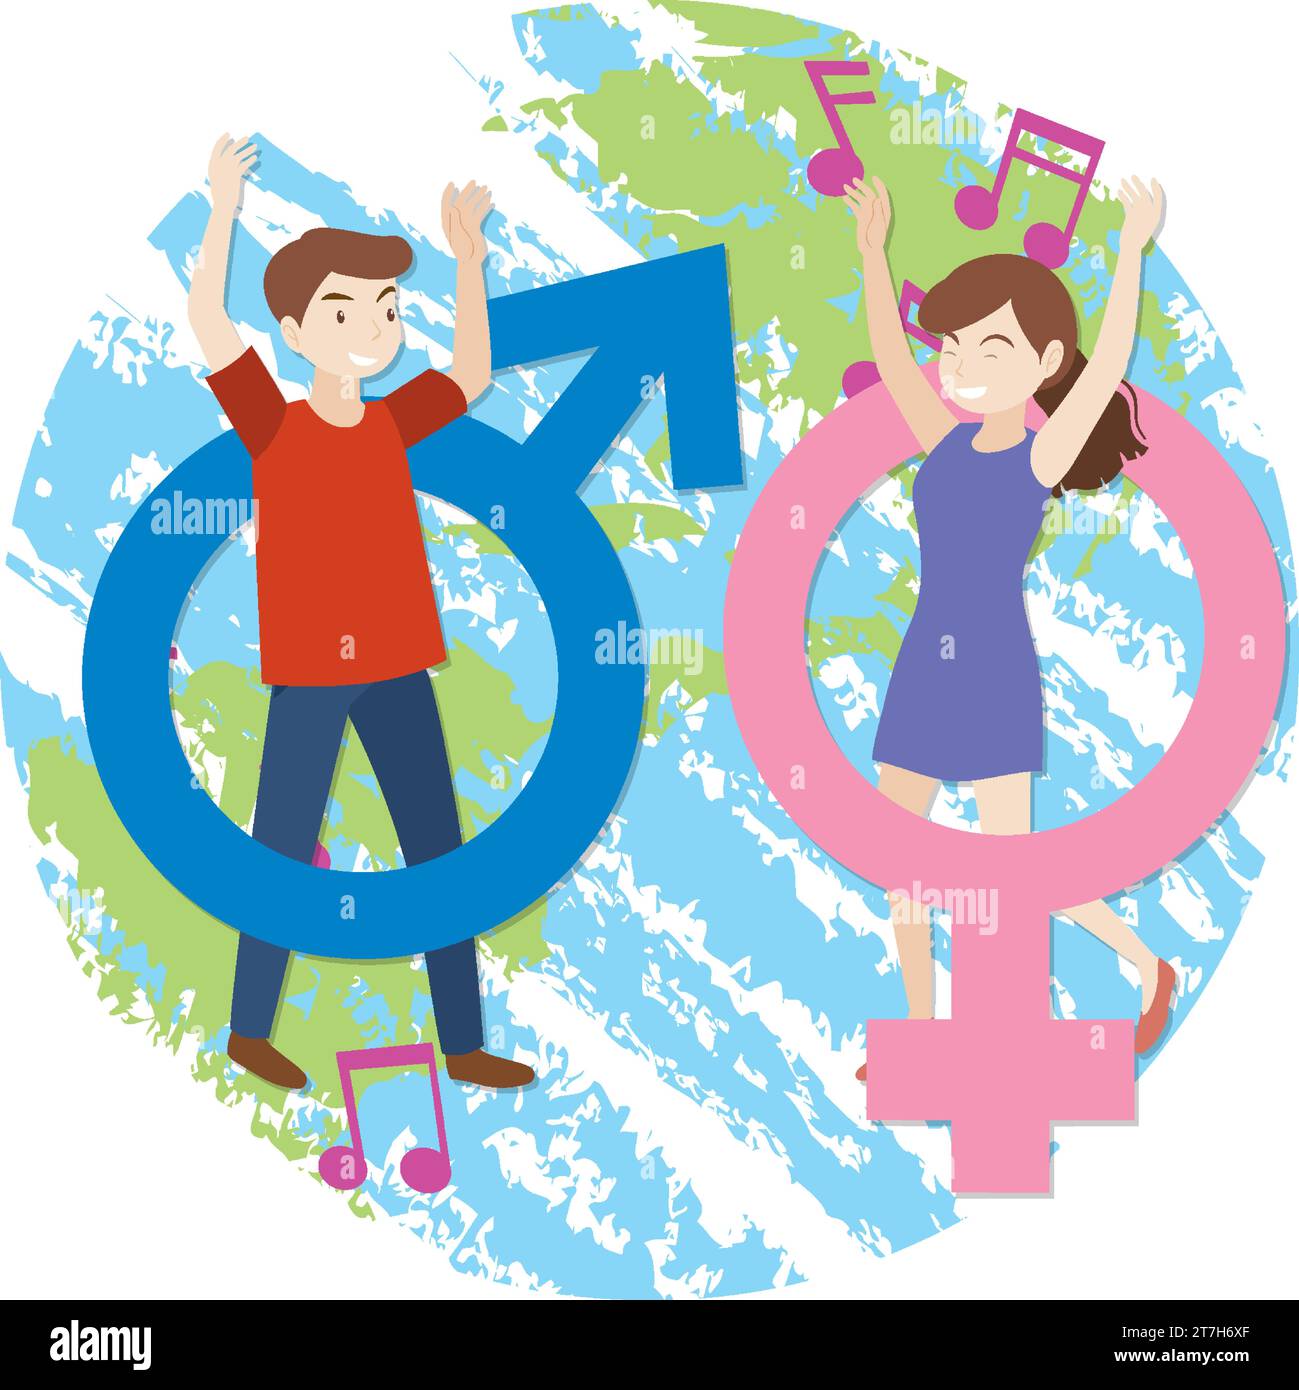 Vektor-Cartoon-Illustration eines Mannes und einer Frau, die auf der Erde stehen Stock Vektor